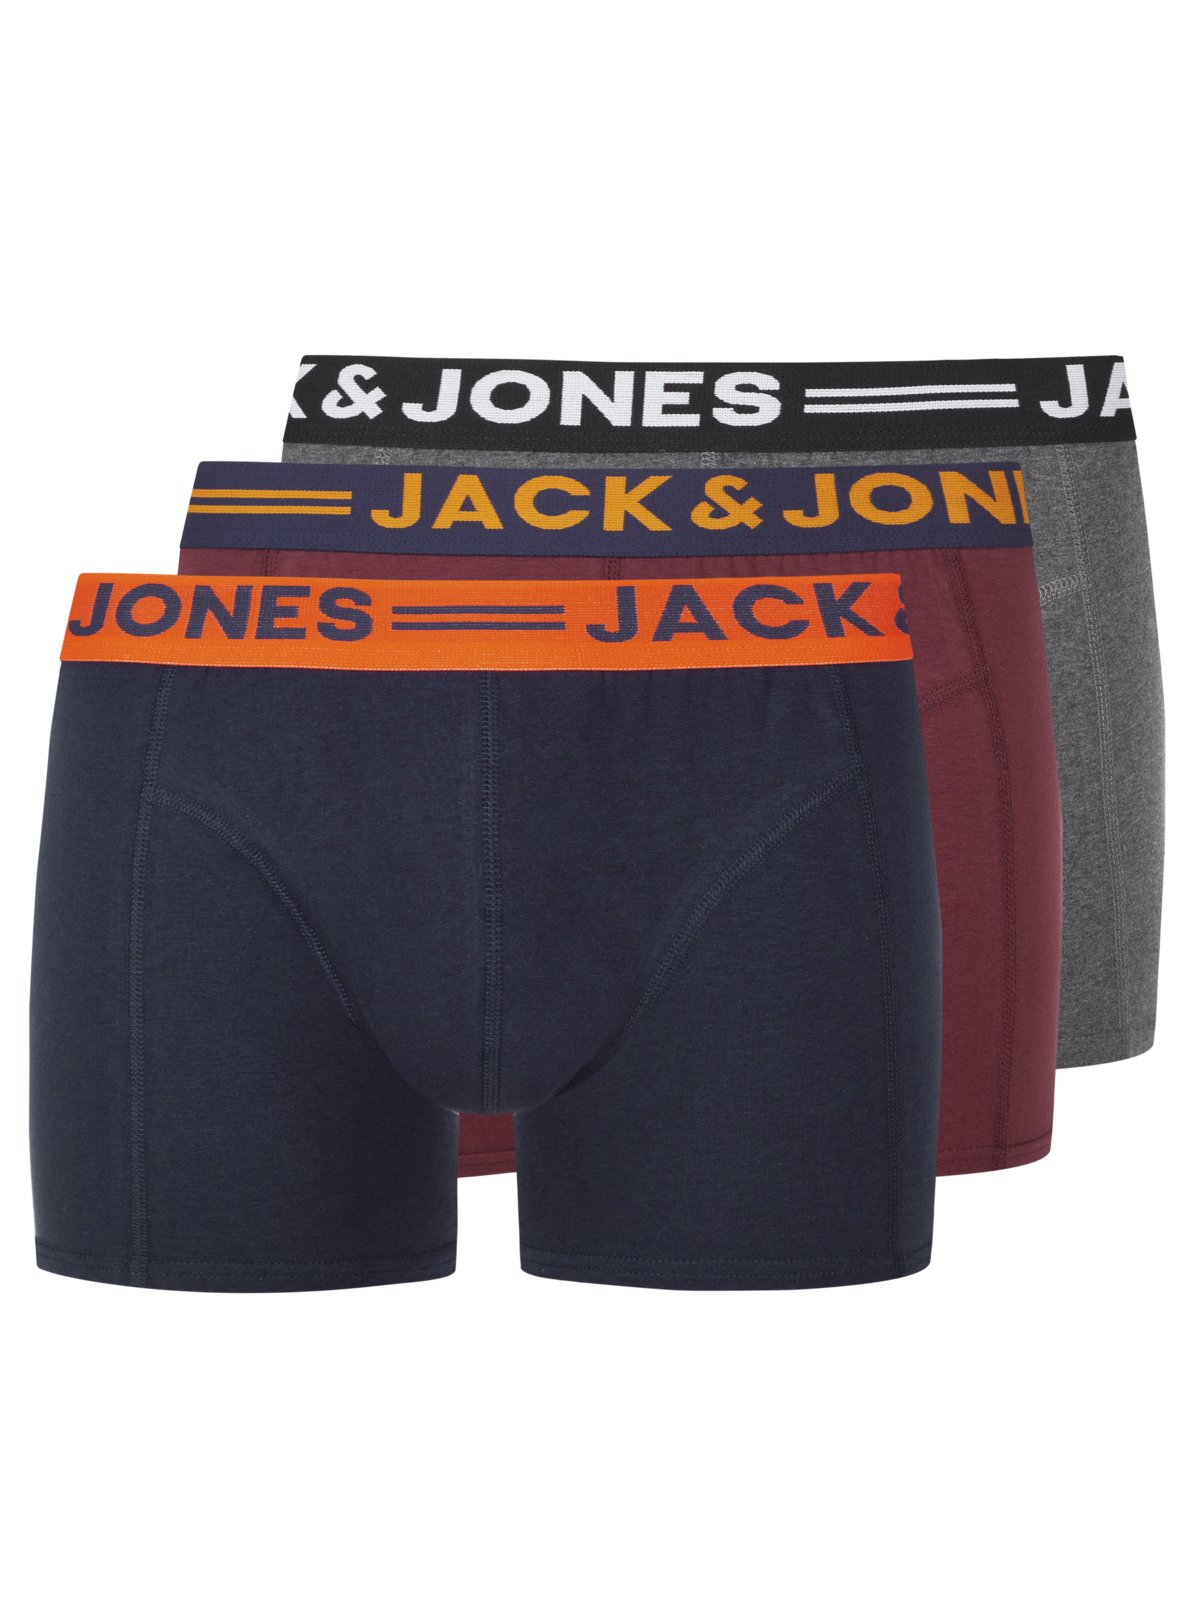 Jack & Jones 3er Pack Boxer Trunks